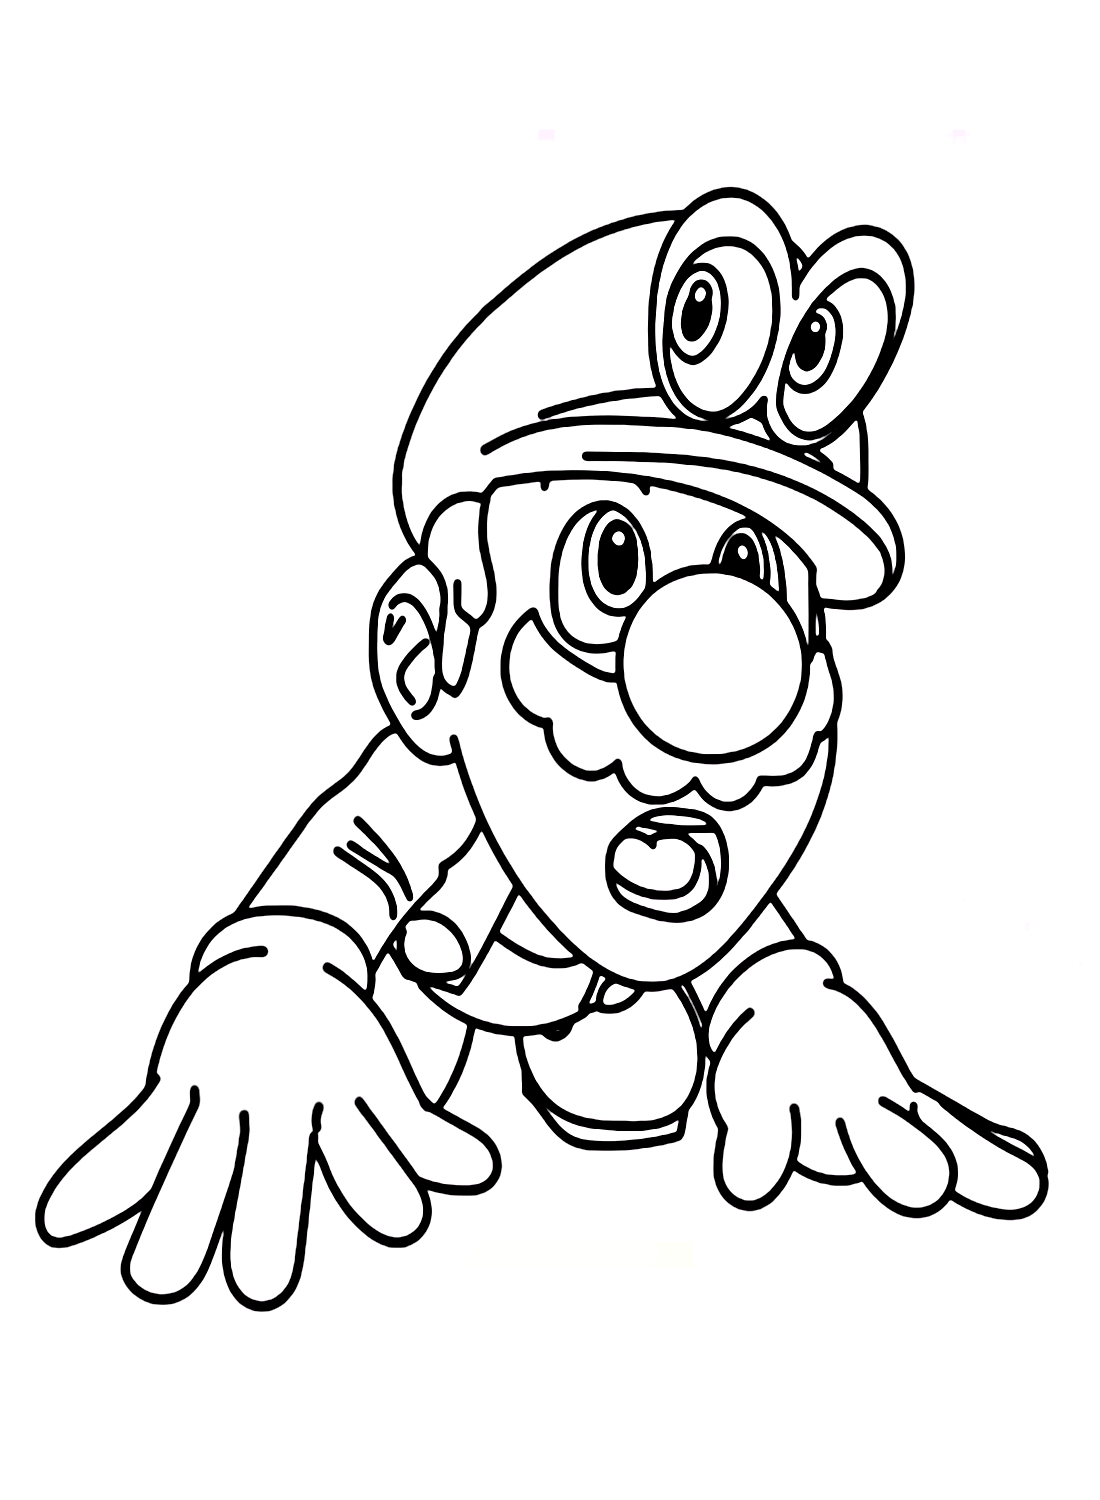 Super Mario Odyssey Coloring Page